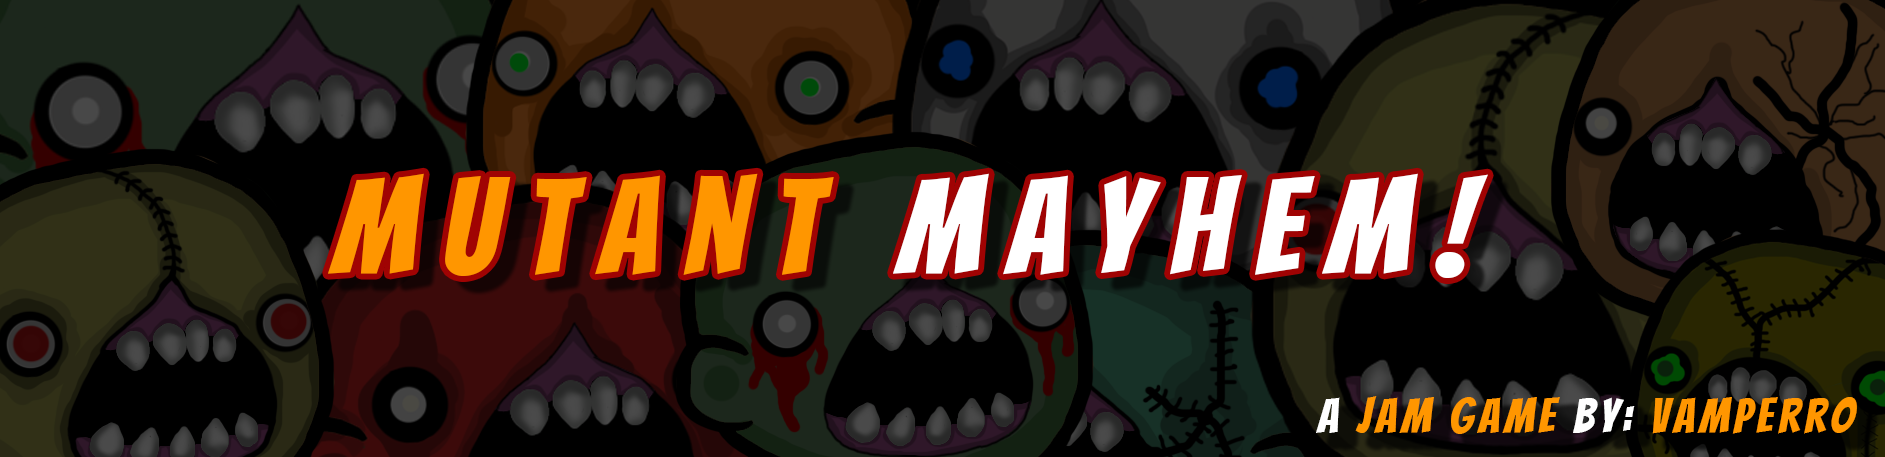 Mutant Mayhem!